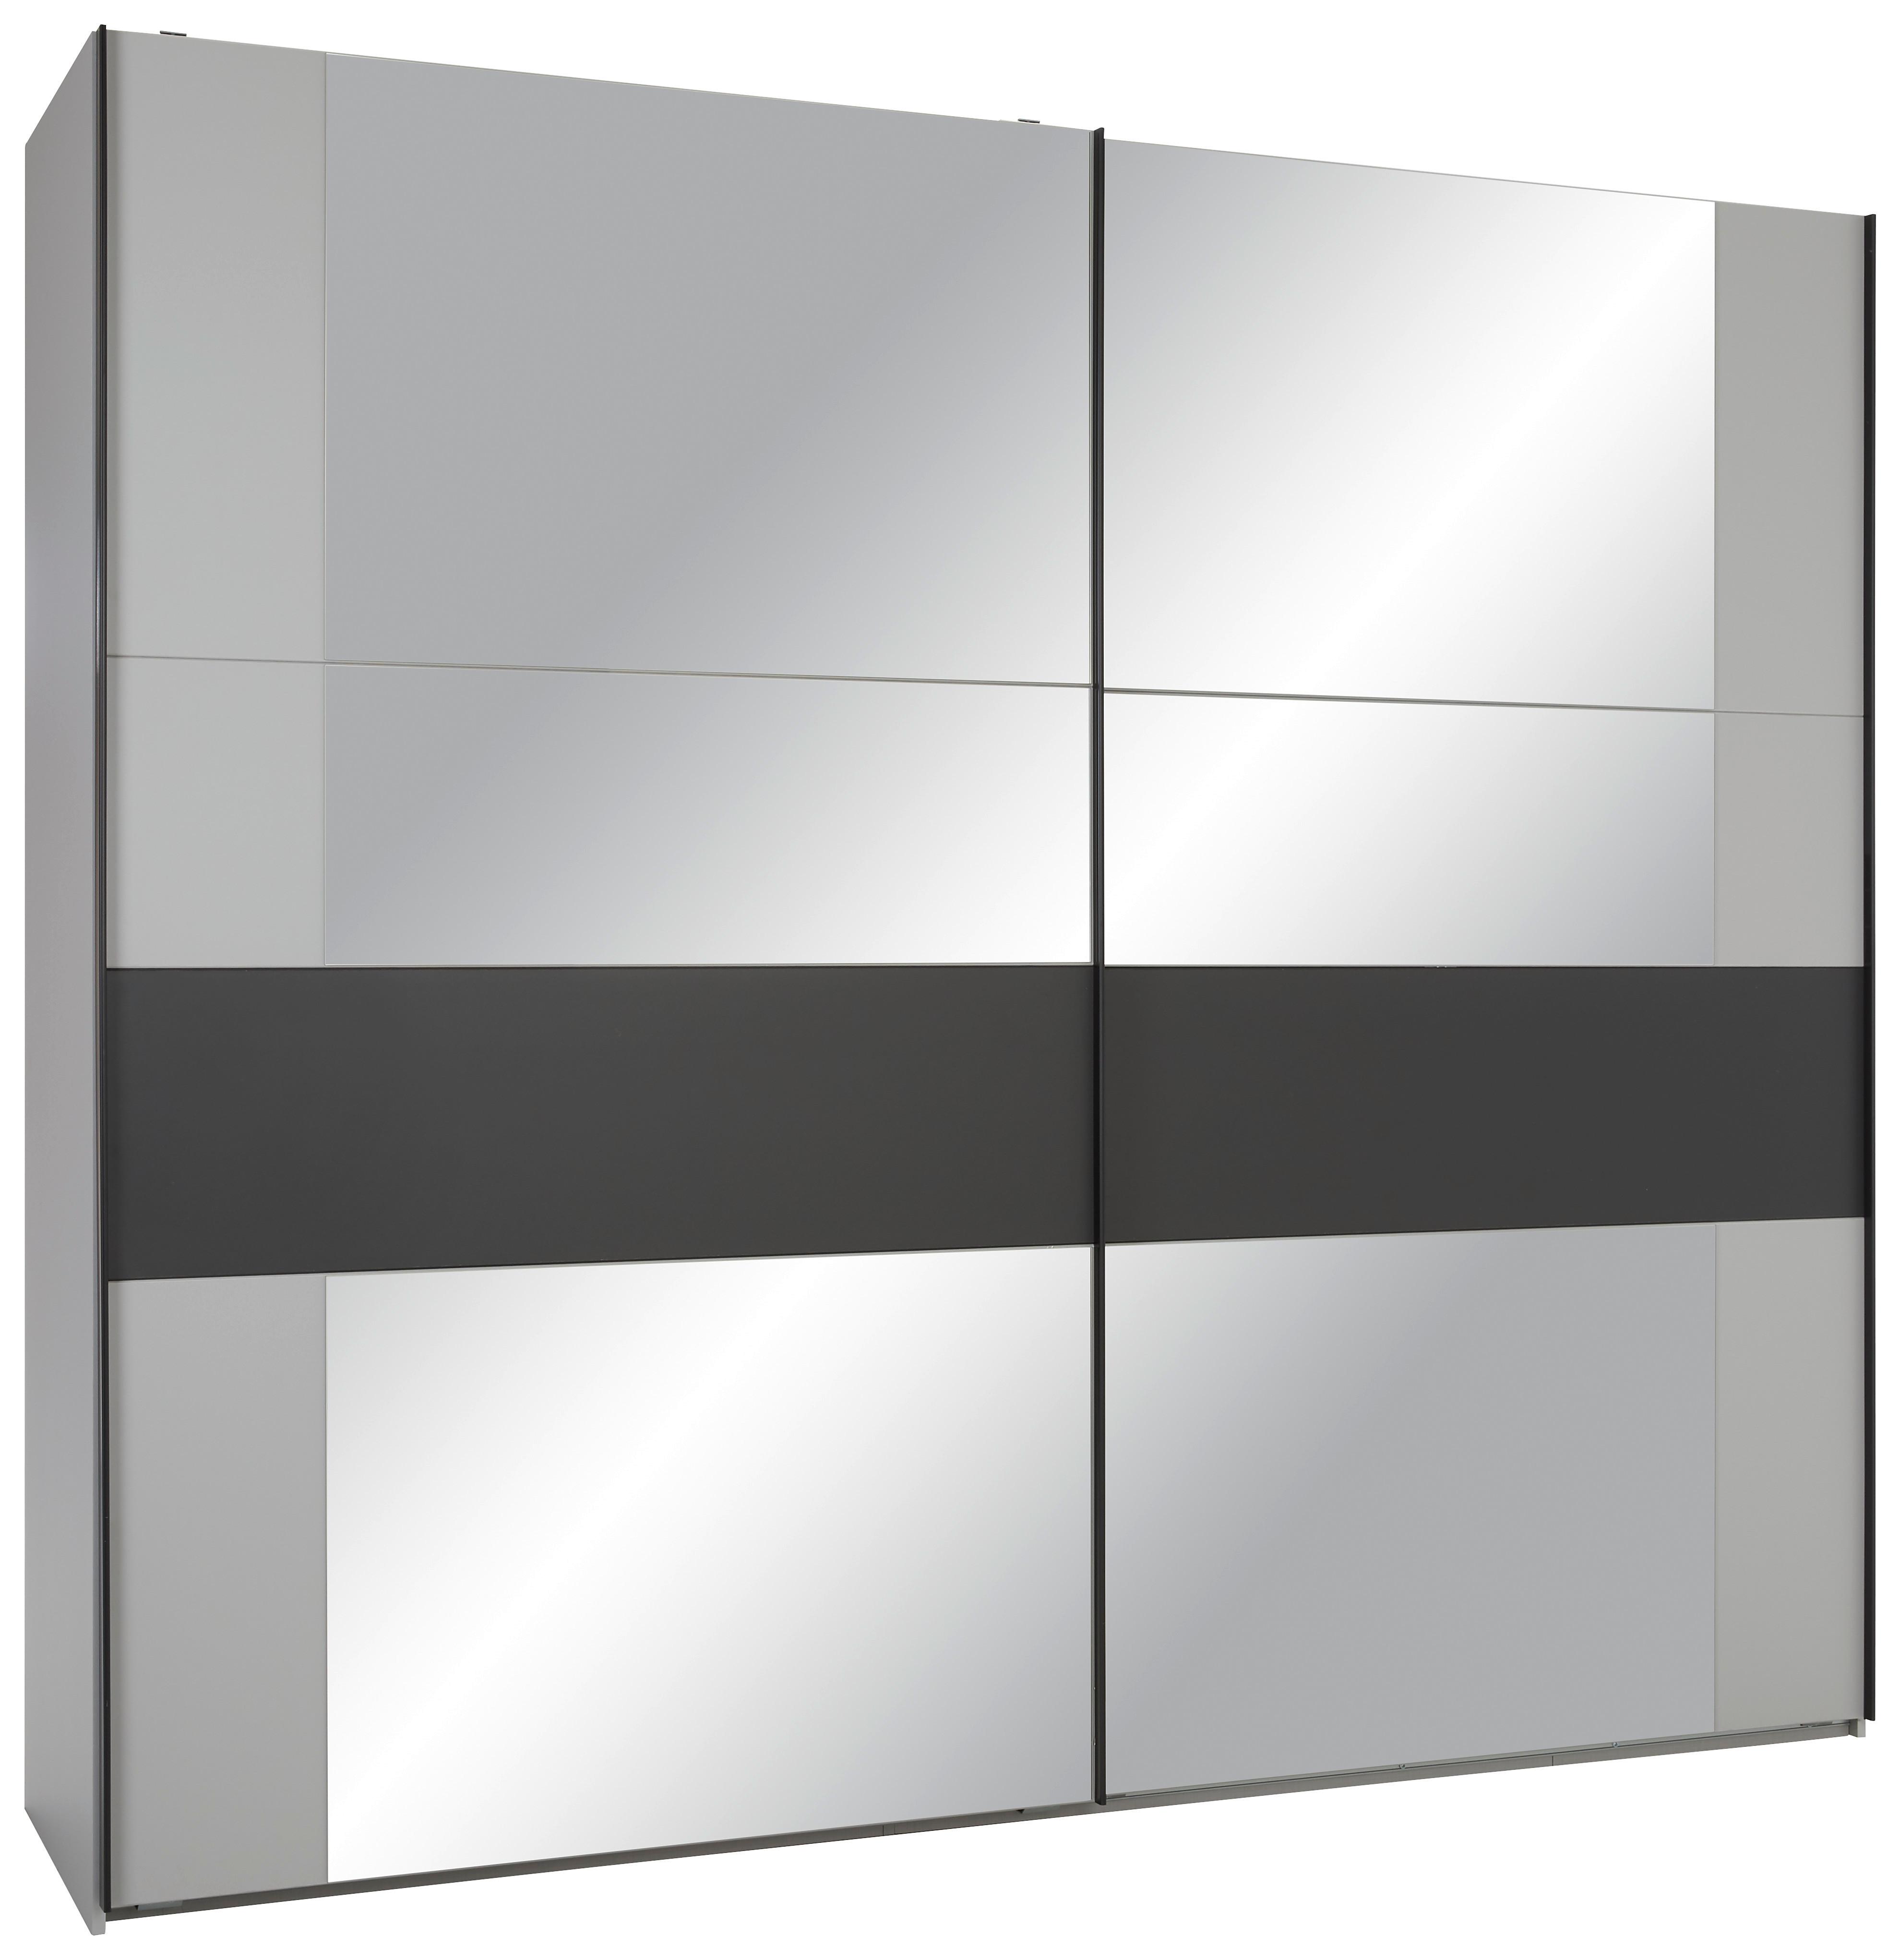 Šatní Skříň S Posuvnými Dveřmi A Zrcadlem Sapporo - černá/světle šedá, Lifestyle, kov/kompozitní dřevo (250/218/65cm)